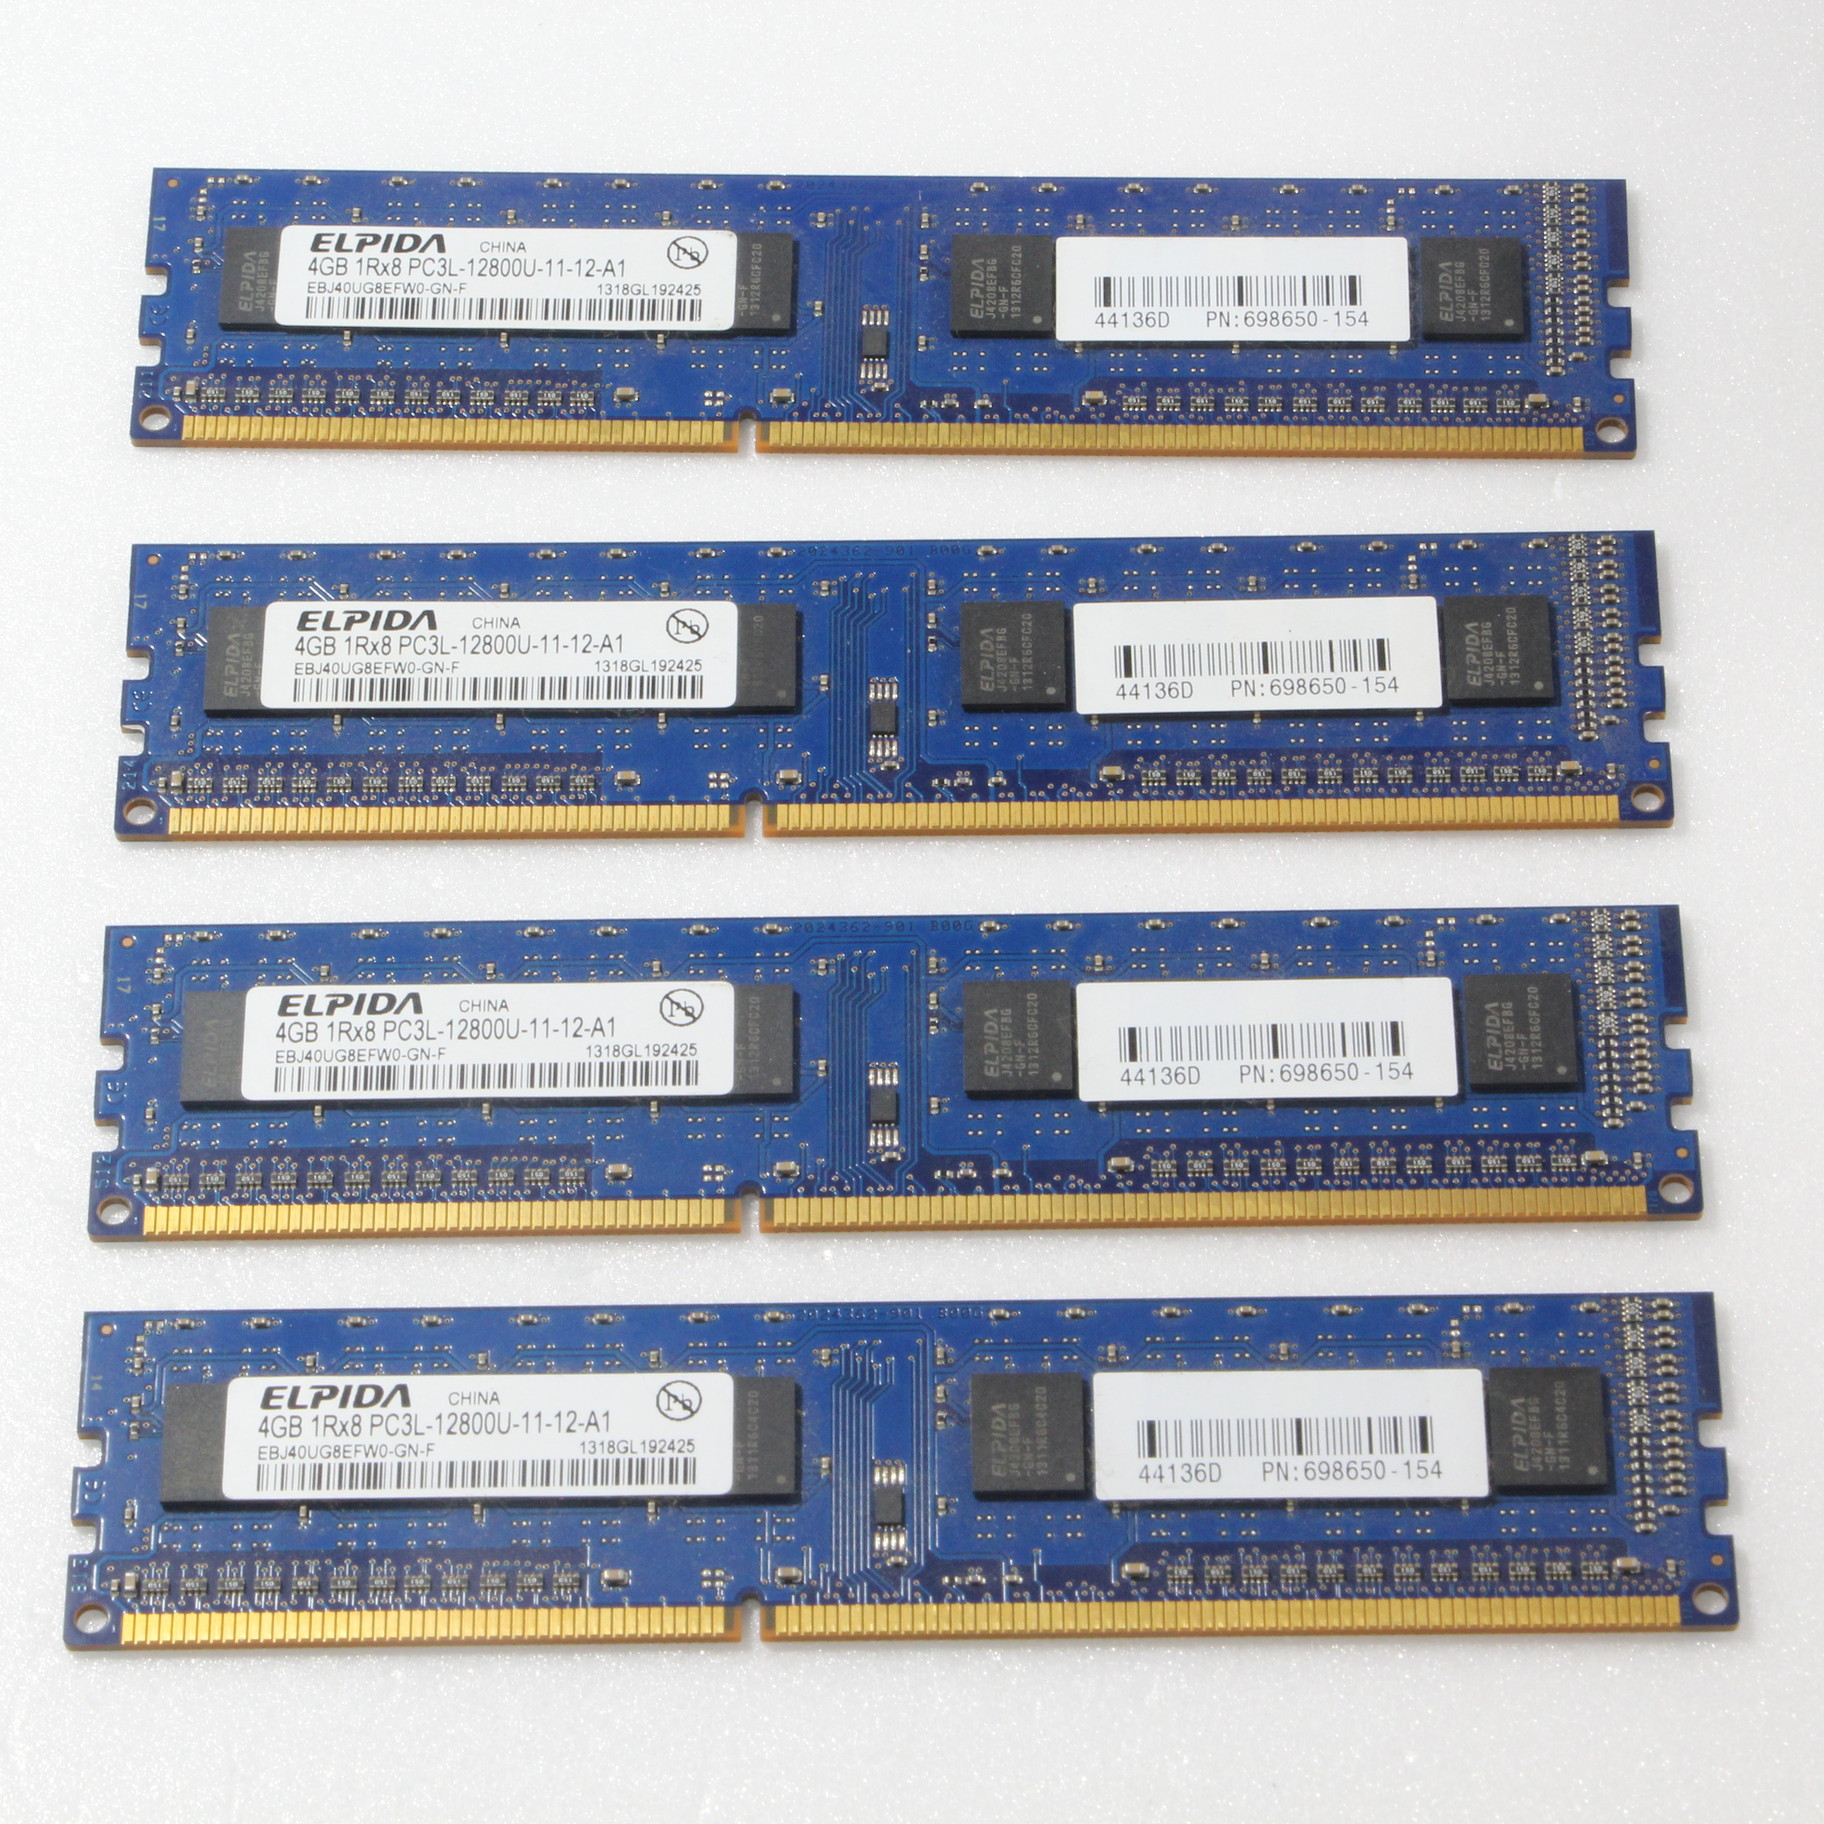 DDR3 PC3-12800U 4GB × 4枚